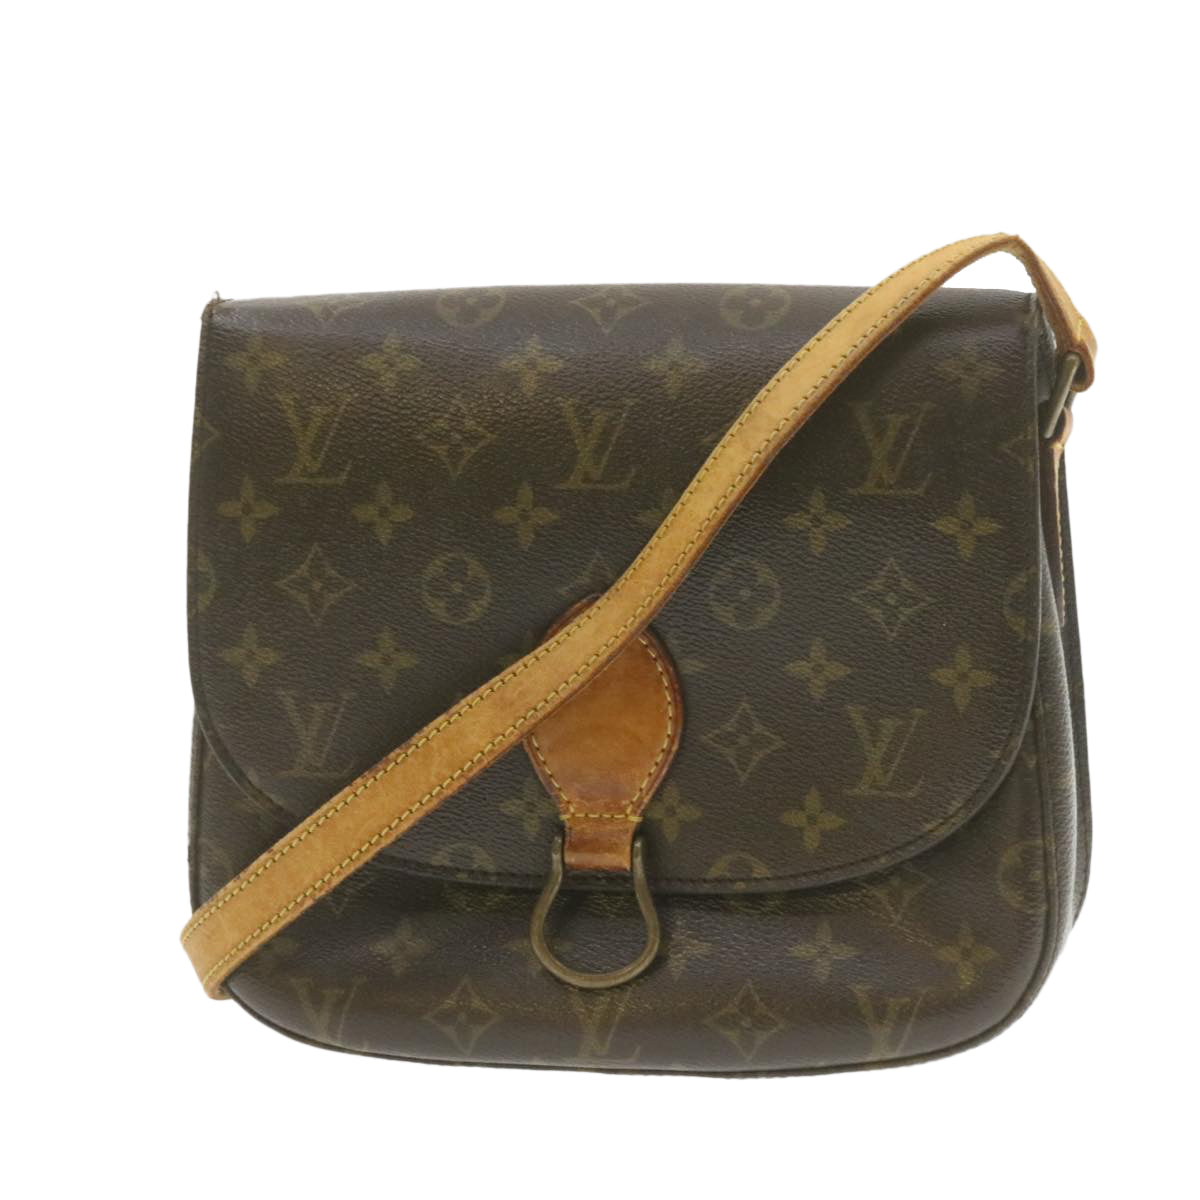 Louis Vuitton - Authenticated Saint Cloud Handbag - Cloth Brown for Women, Good Condition